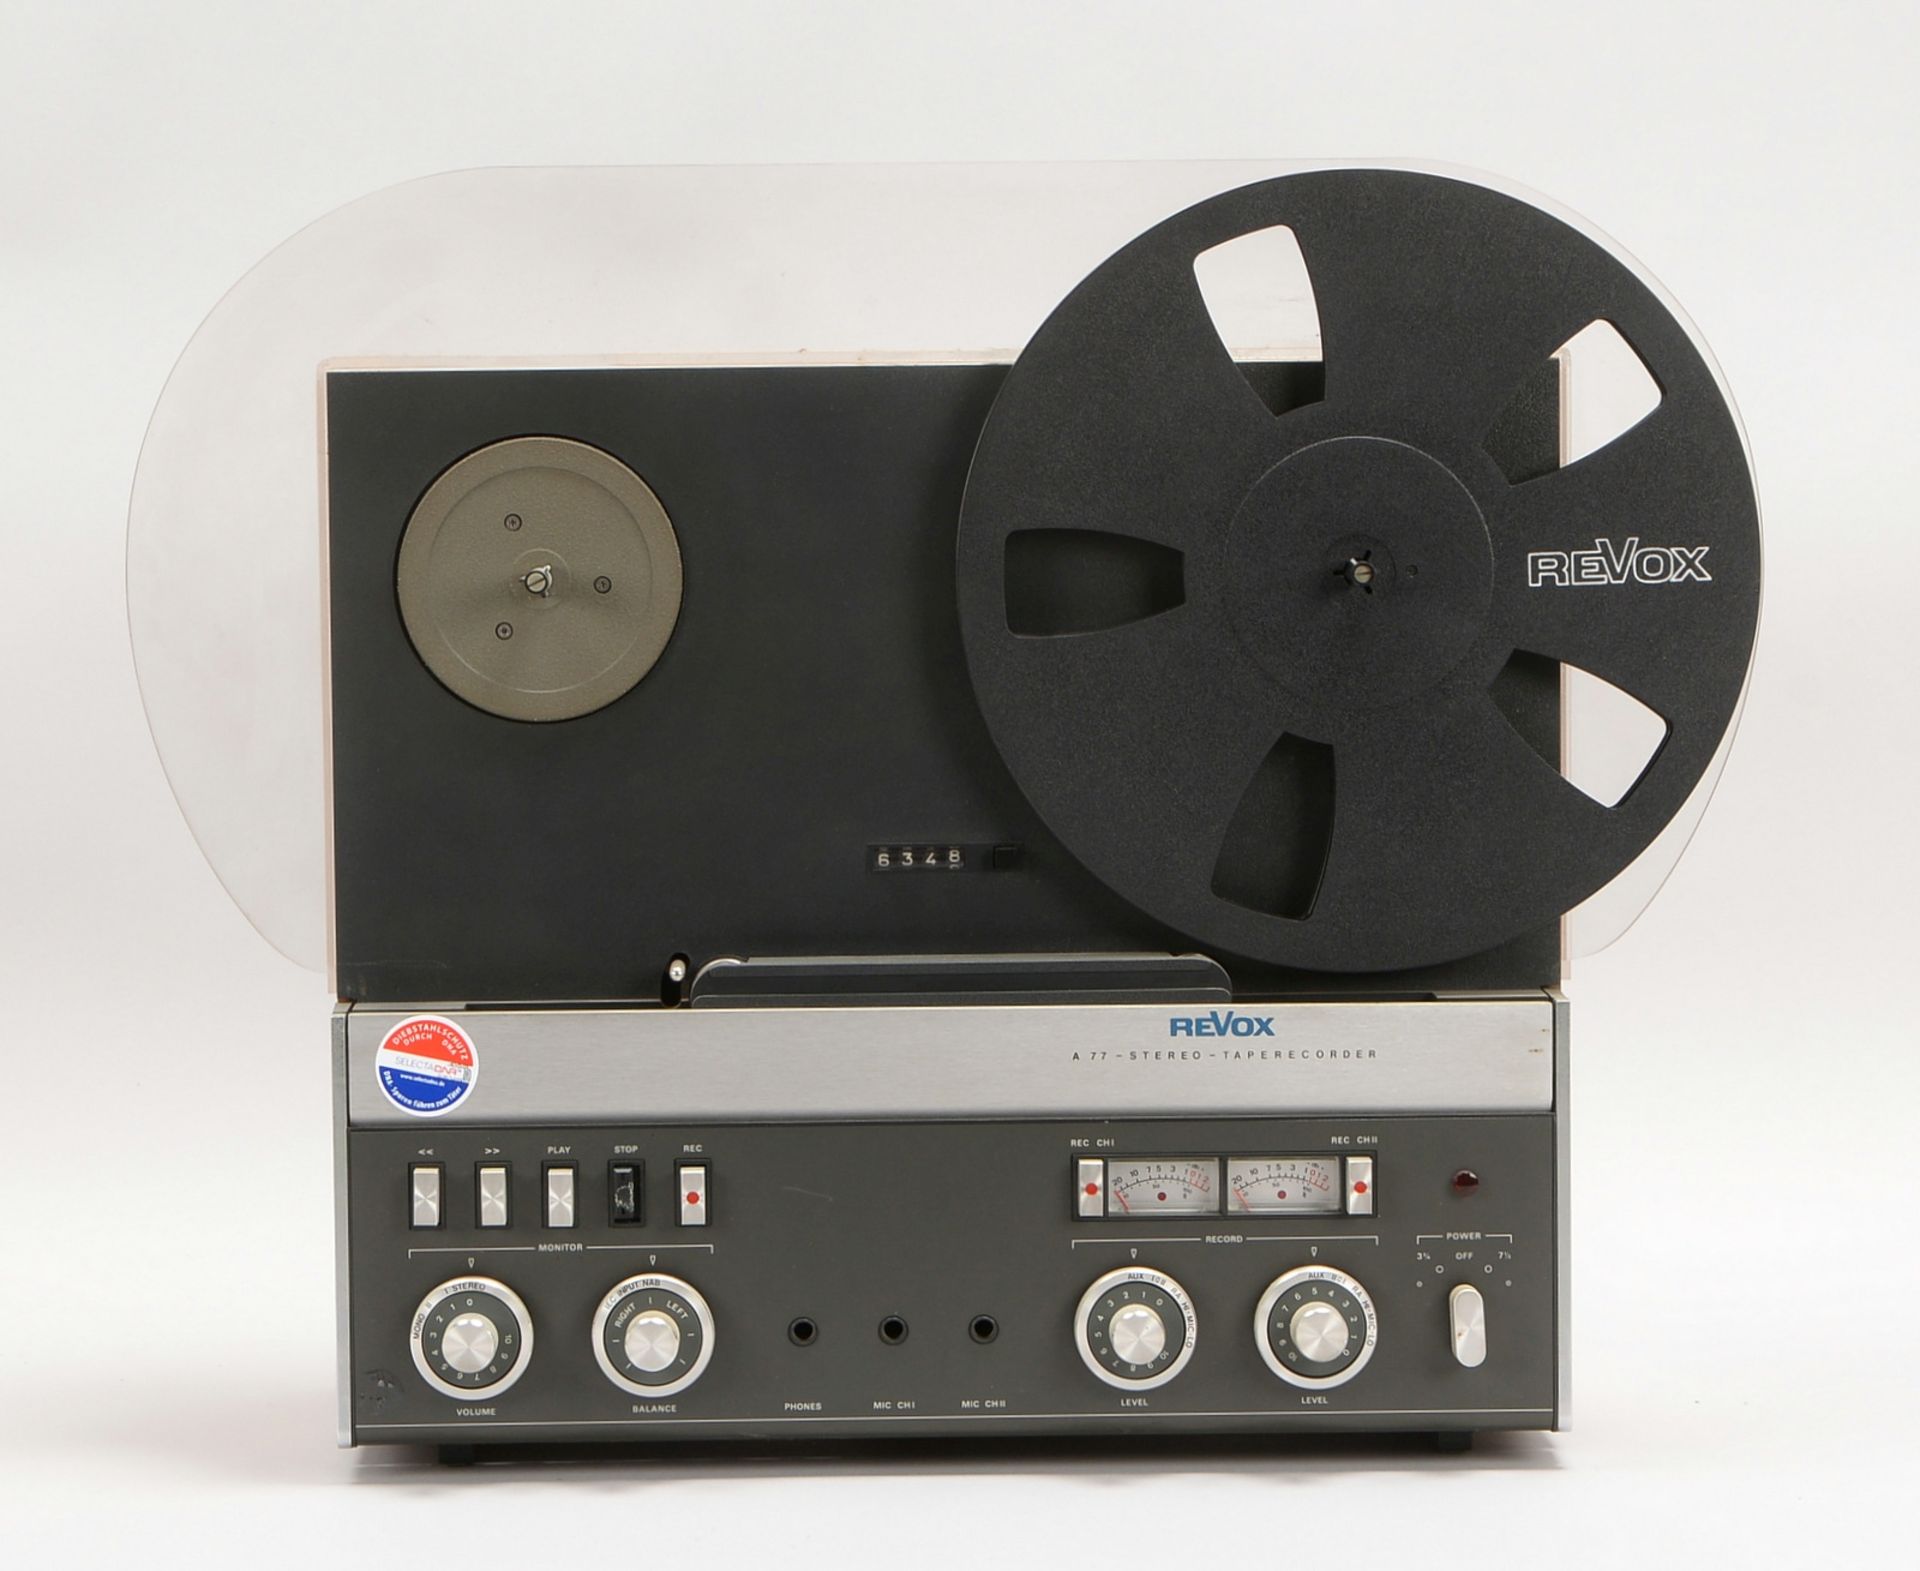 Altes Tonbandgerät (1970er Jahre), Revox, Modell 'A77' - Fkt. nicht geprüft  - Bild 2 aus 2